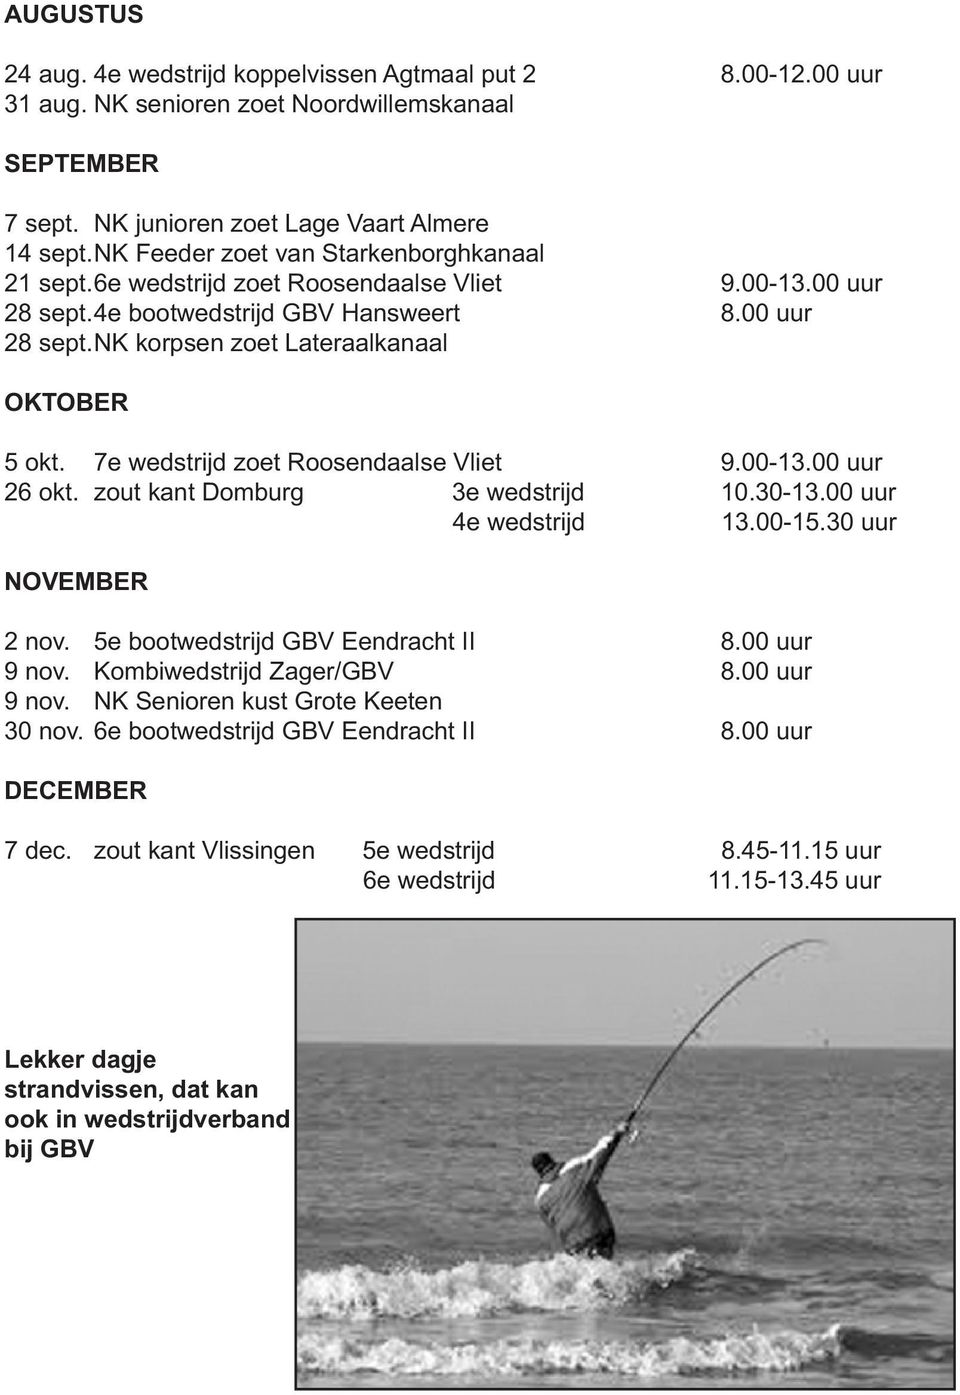 7e wedstrijd zoet Roosendaalse Vliet 9.00-13.00 uur 26 okt. zout kant Domburg 3e wedstrijd 10.30-13.00 uur 4e wedstrijd 13.00-15.30 uur NOVEMBER 2 nov. 5e bootwedstrijd GBV Eendracht II 8.